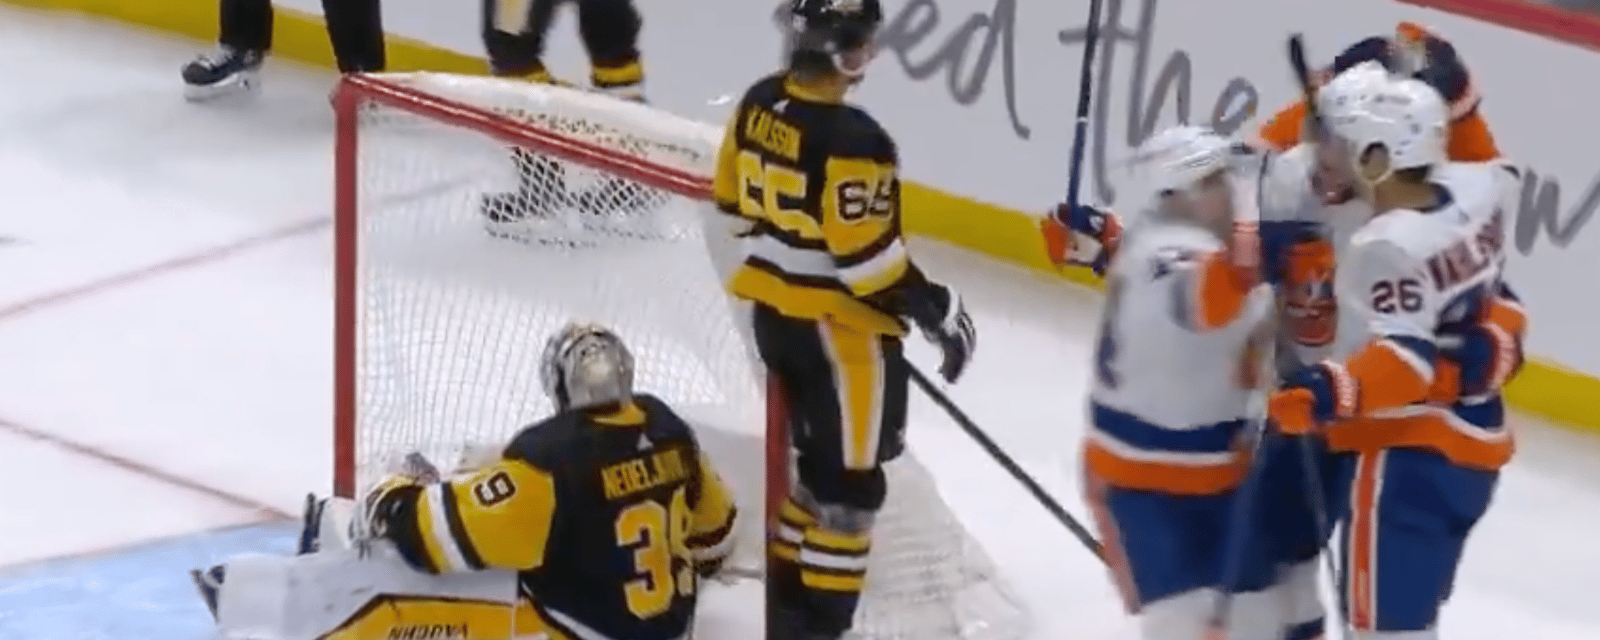 Penguins fans blast Erik Karlsson after defensive blunder